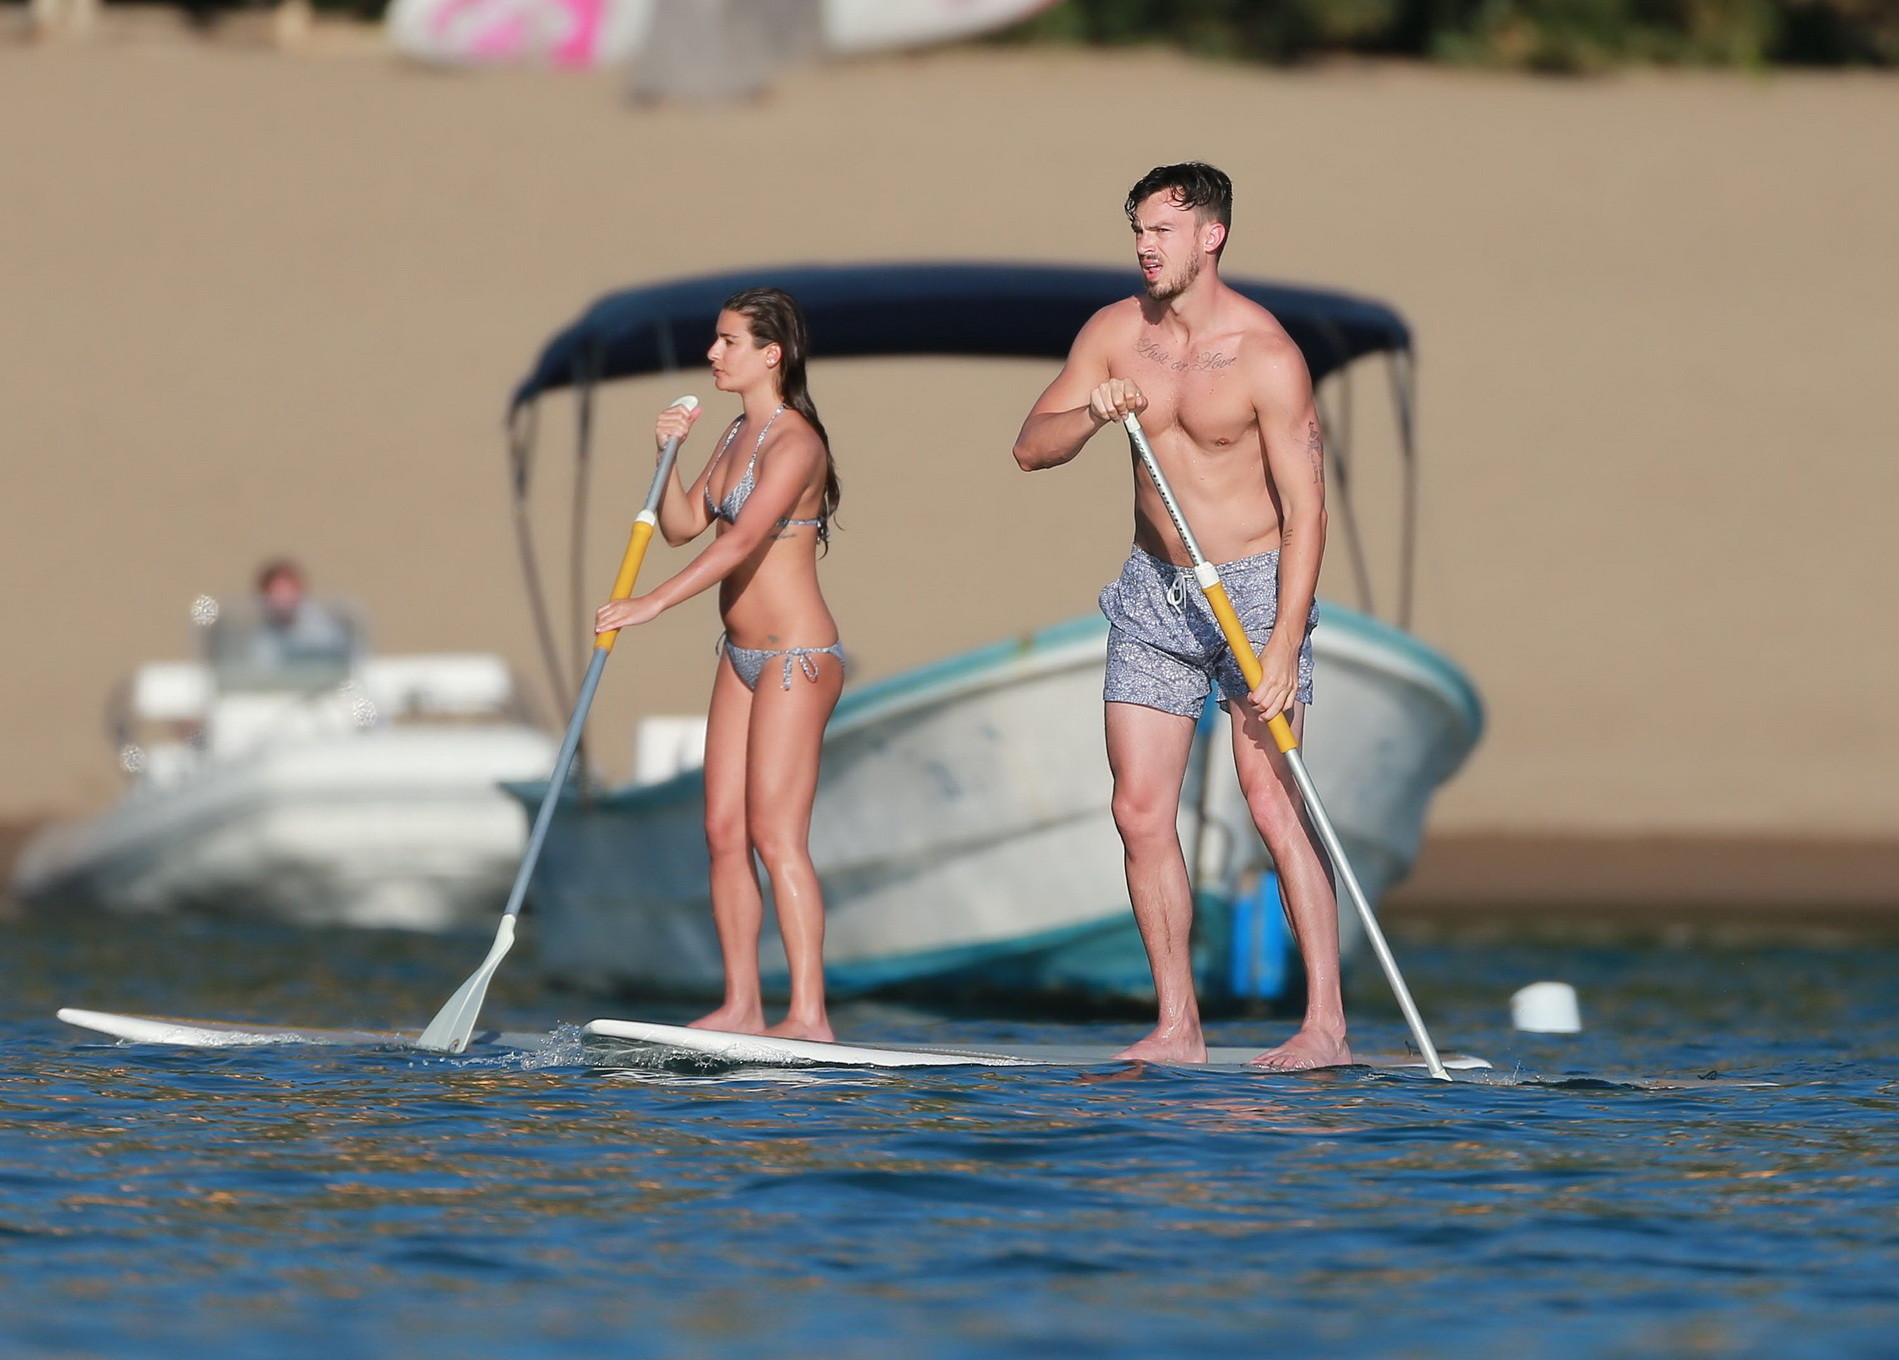 Lea michele en un diminuto bikini monocromático haciendo paddeboard en la playa de méxico
 #75176600